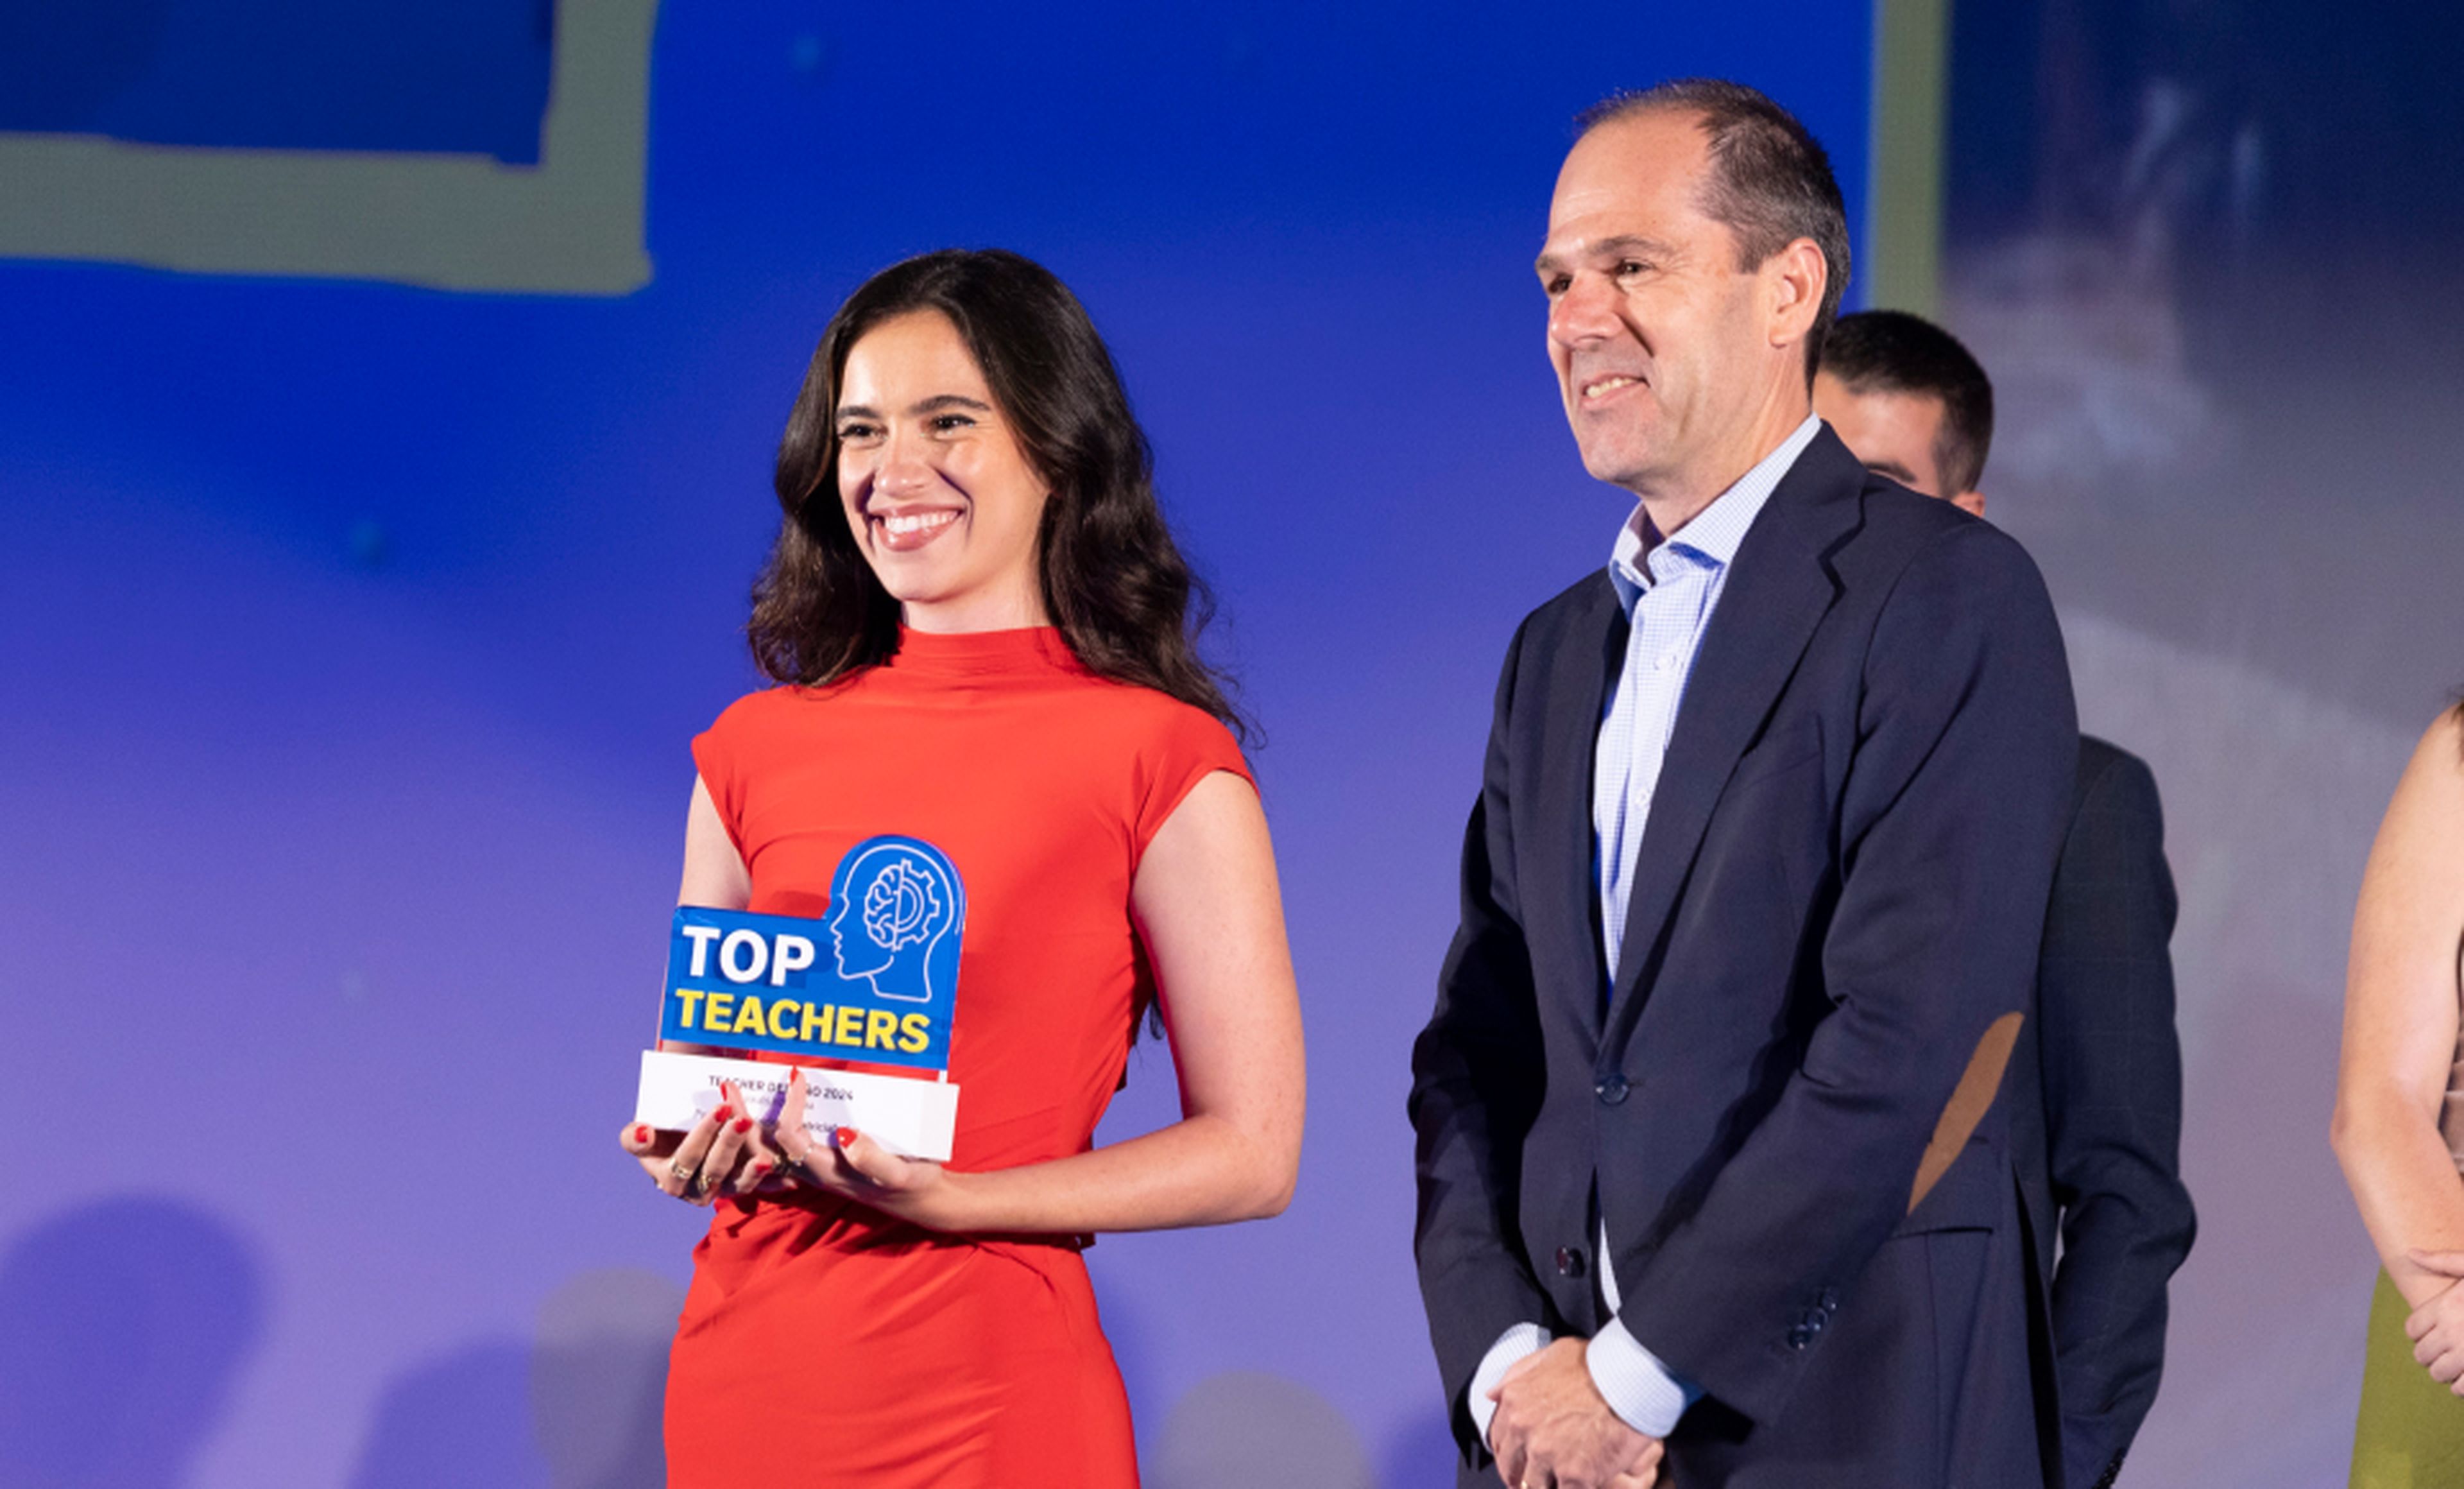 Patricia Fernández (@patriciafedez) recibió el premio Top Teacher del Año en la categoría de Viajes y Cultura de la mano de Javier Tabernero, CEO de Canon en España y Portugal.